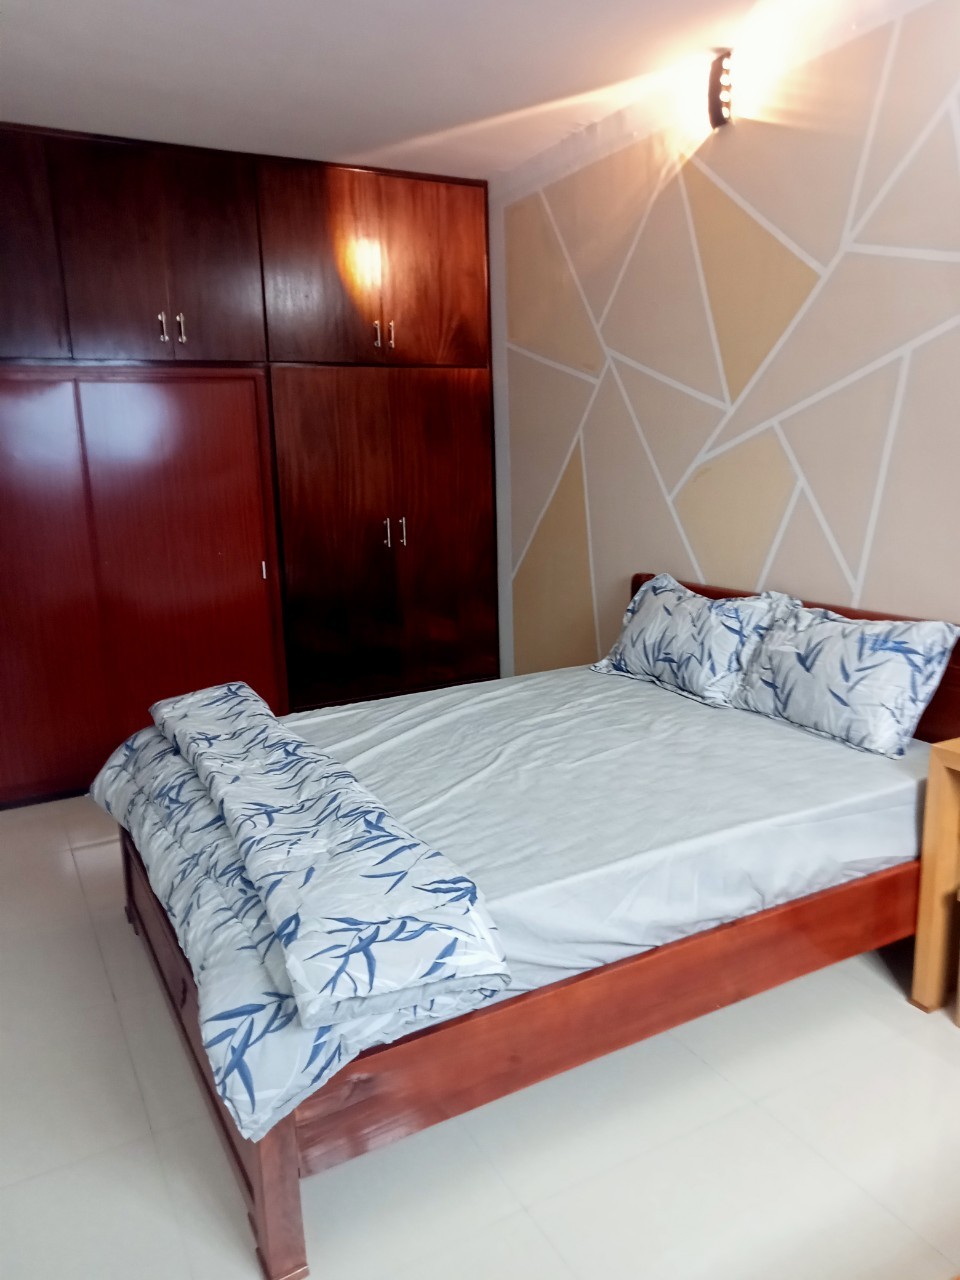 Căn hộ đầy đủ nội thất và thiết bị ở Trần Văn Ơn - Bình Định